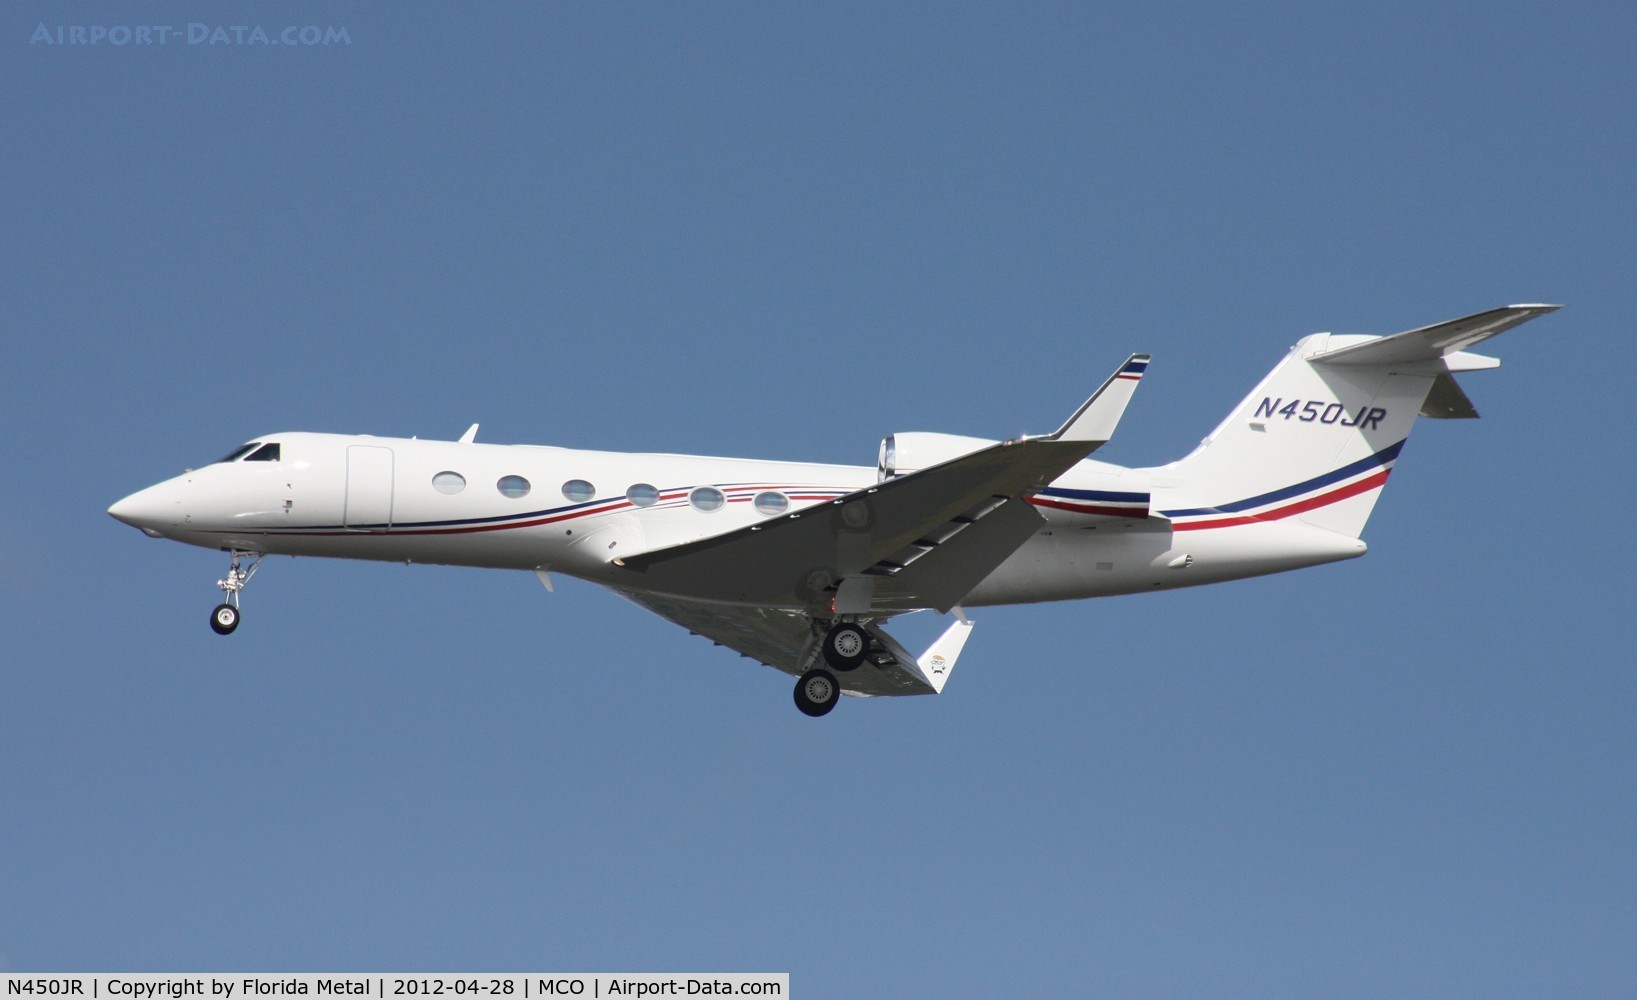 N450JR, 2011 Gulfstream Aerospace GIV-X (G450) C/N 4218, Gulfstream 450